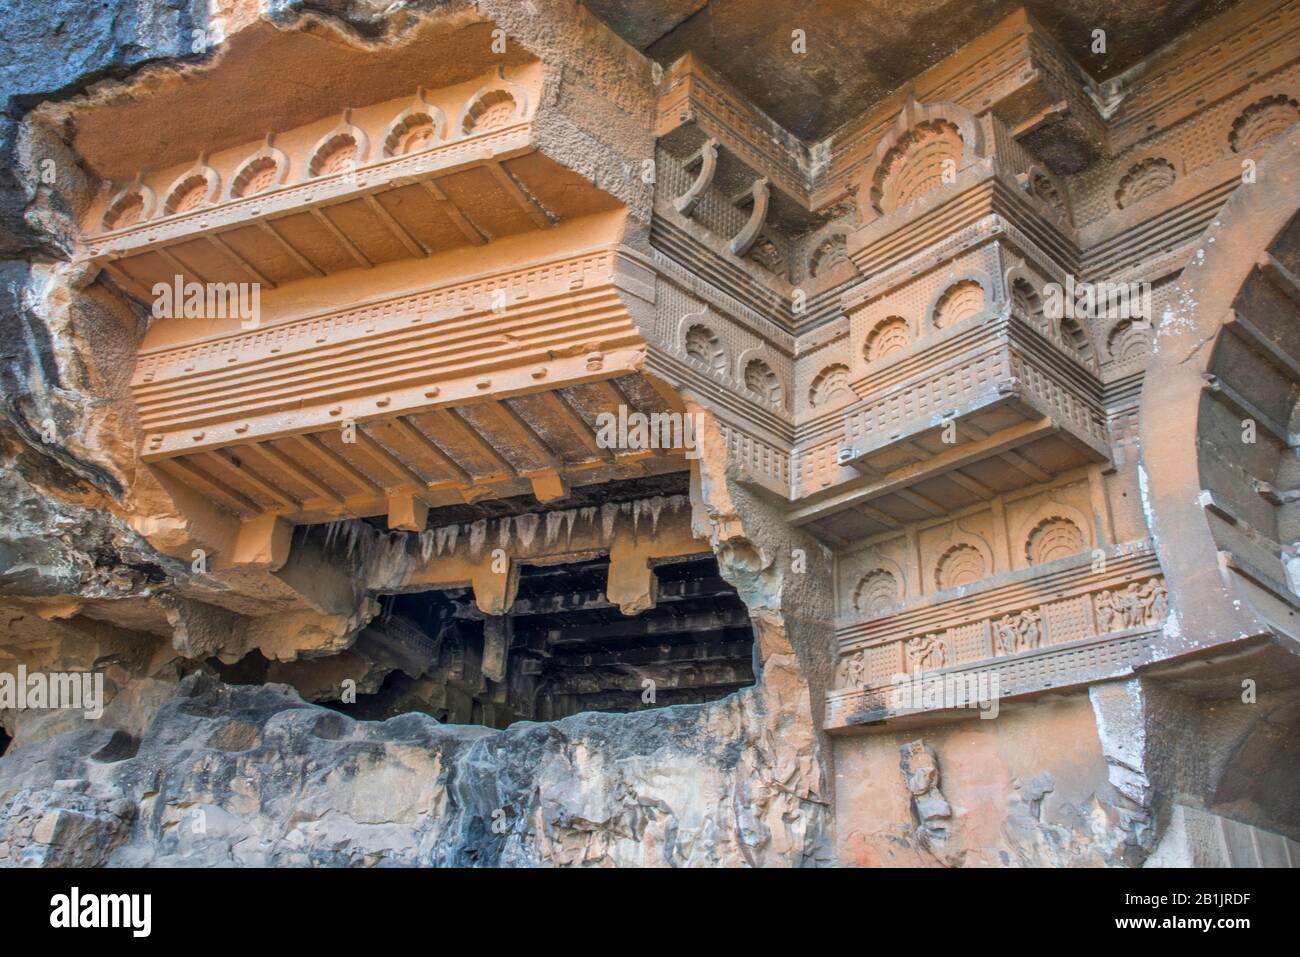 Grotte di Kondana, Karjat, Maharashtra, India : Vista generale della parte superiore della façade che mostra archi in miniatura chaitya e motivo di ringhiera. Foto Stock